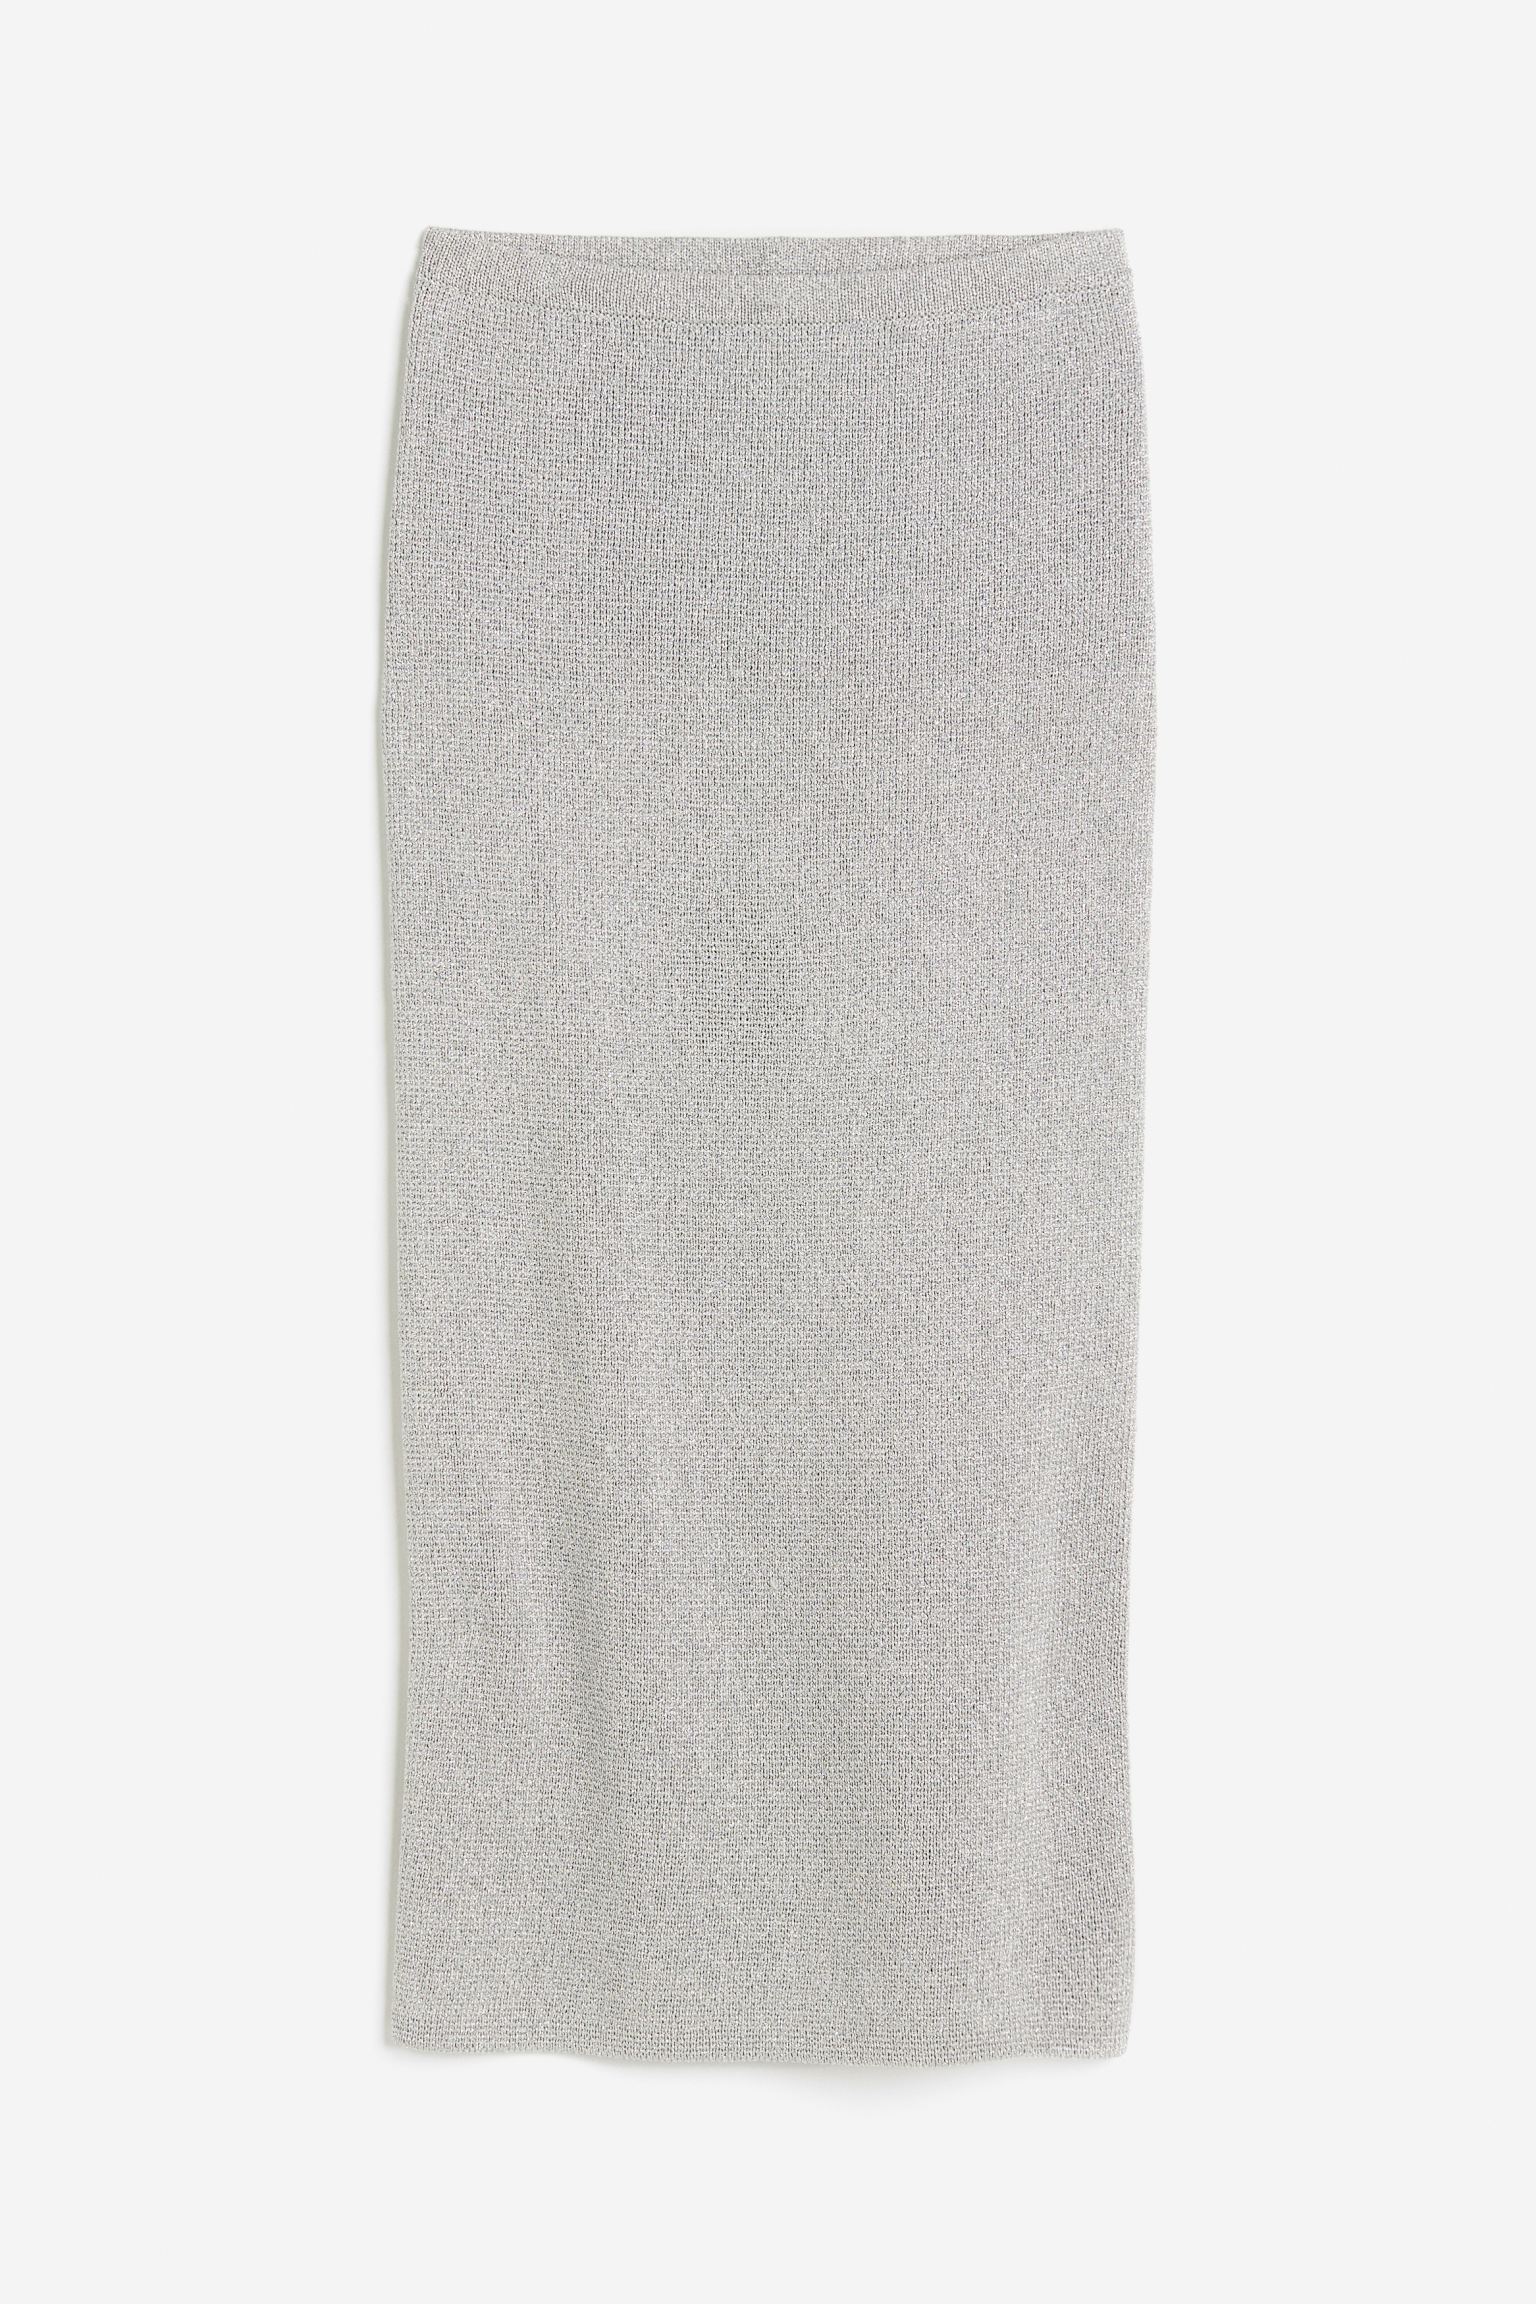 Юбка H&M Shimmery Knit, серебристый юбка zara shimmery mini черный